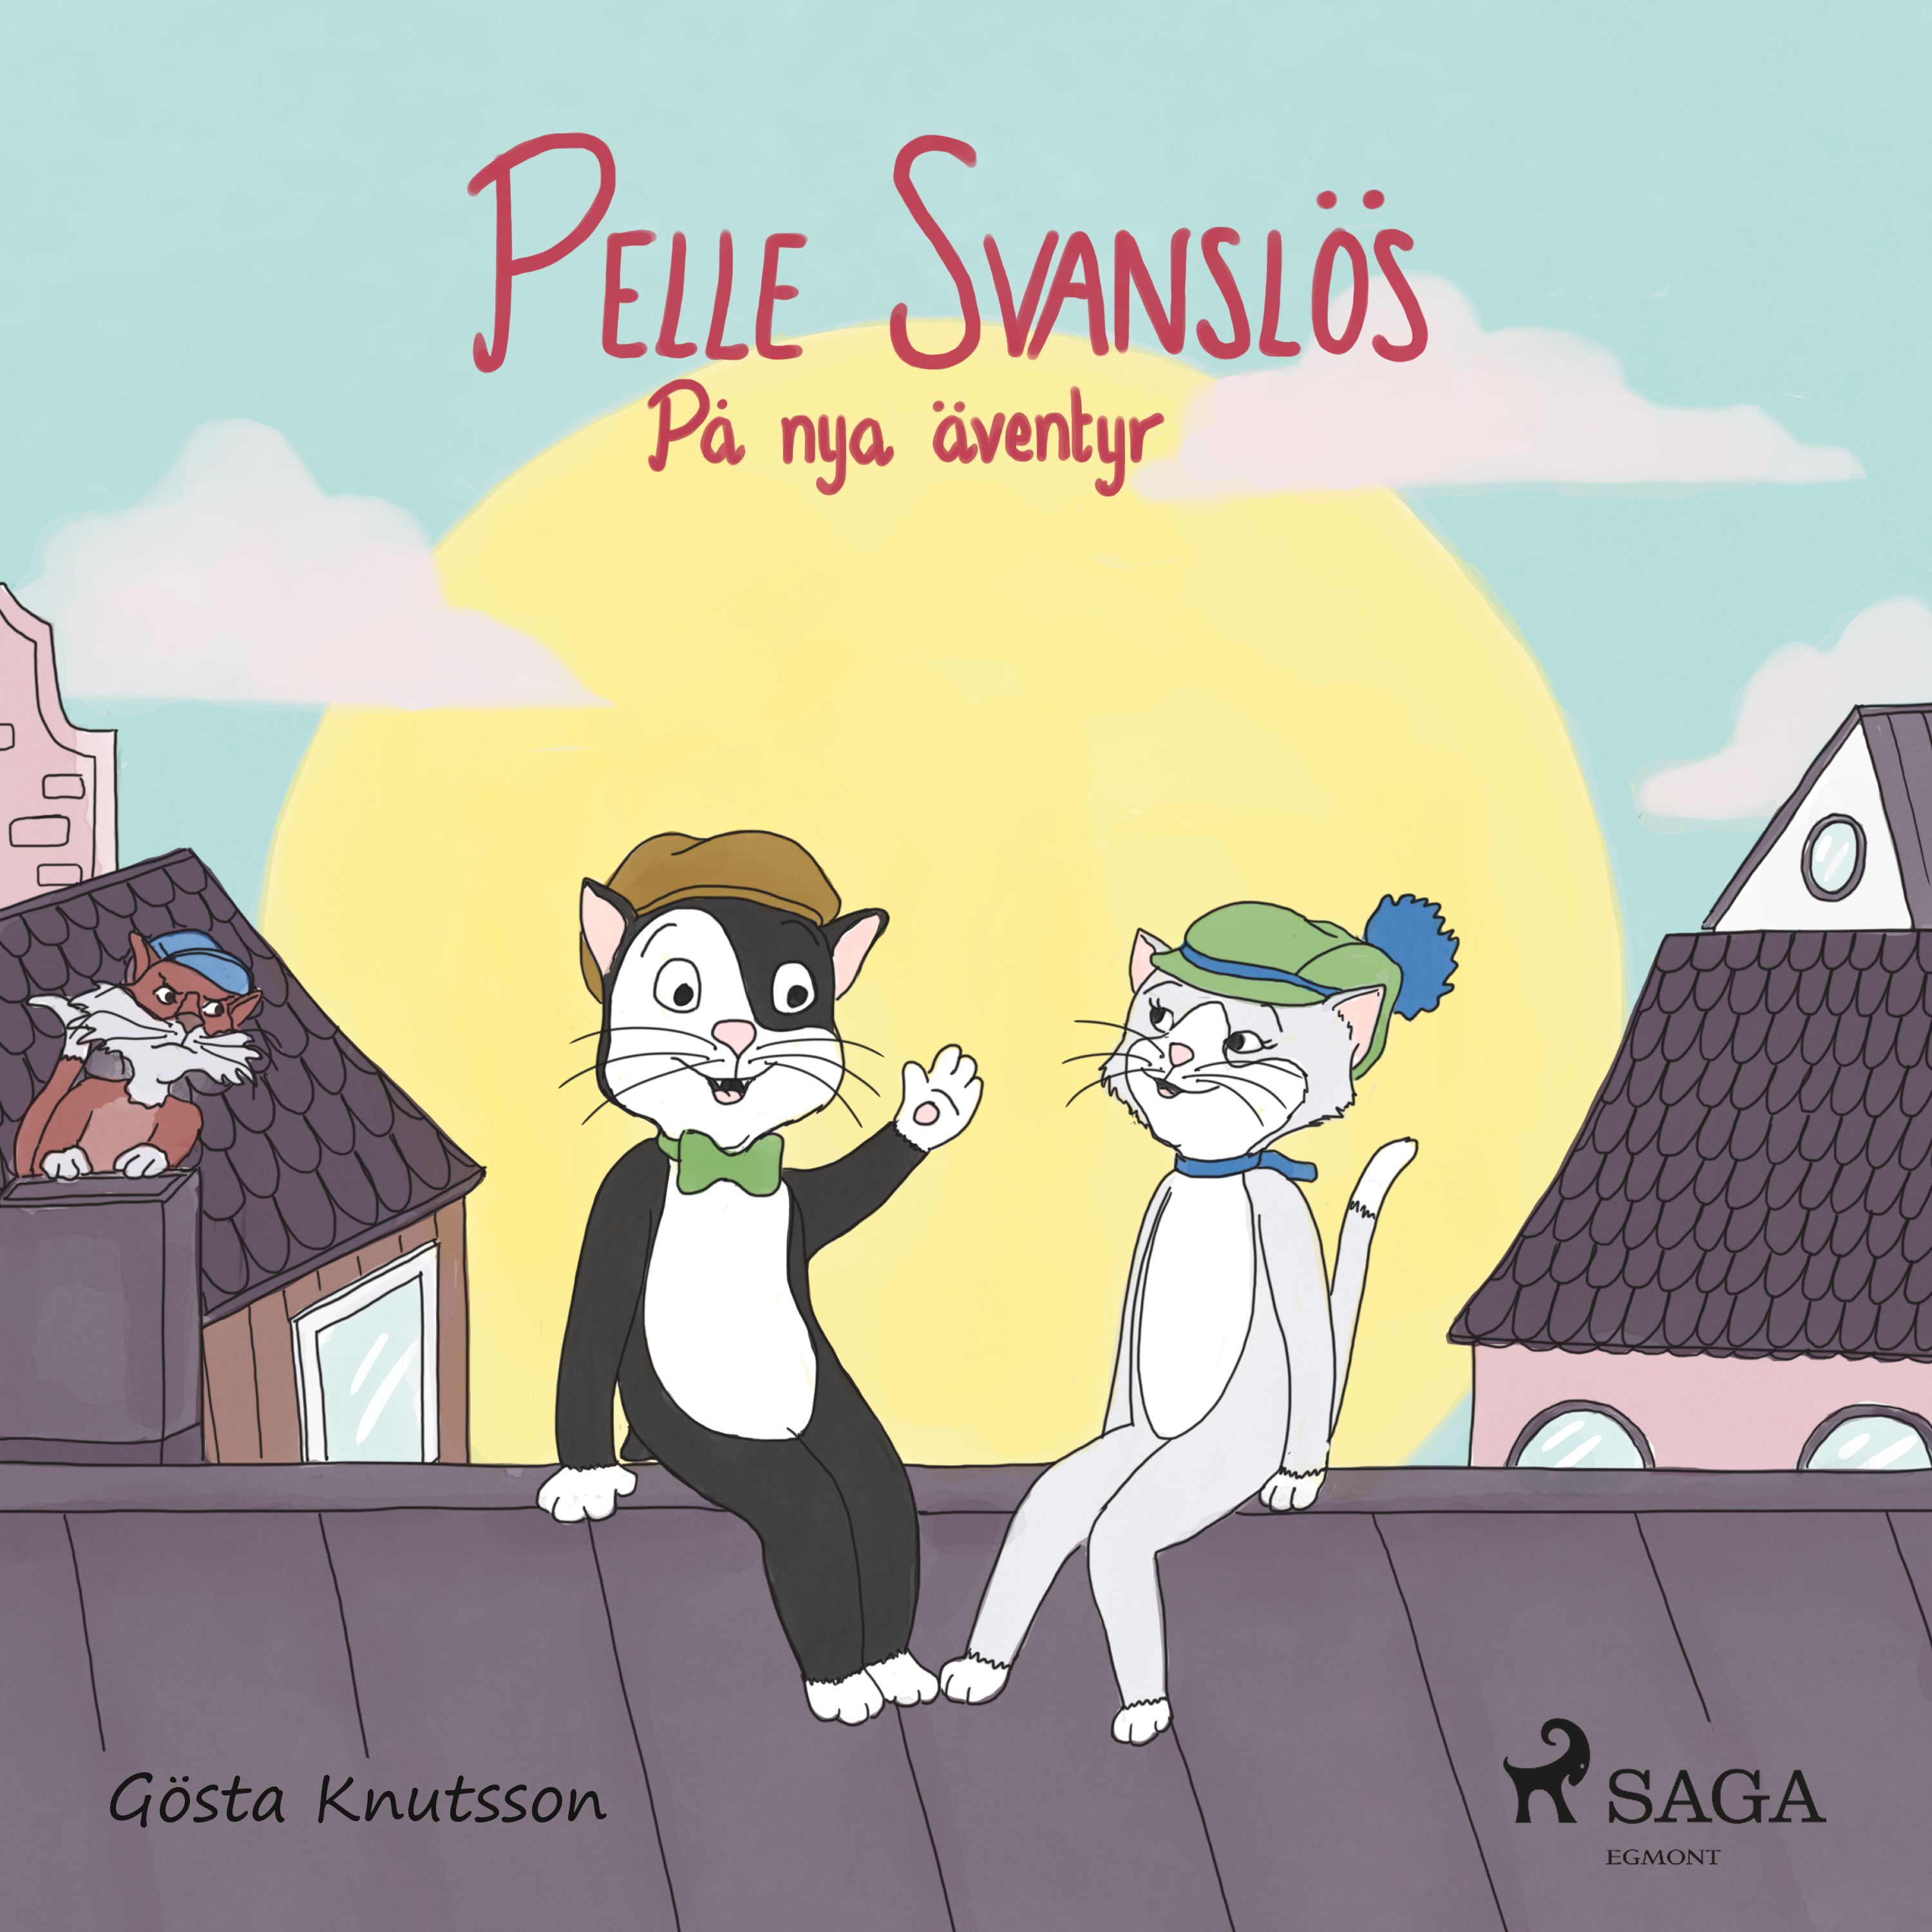 Pelle Svanslös på nya äventyr, ljudbok av Gösta Knutsson